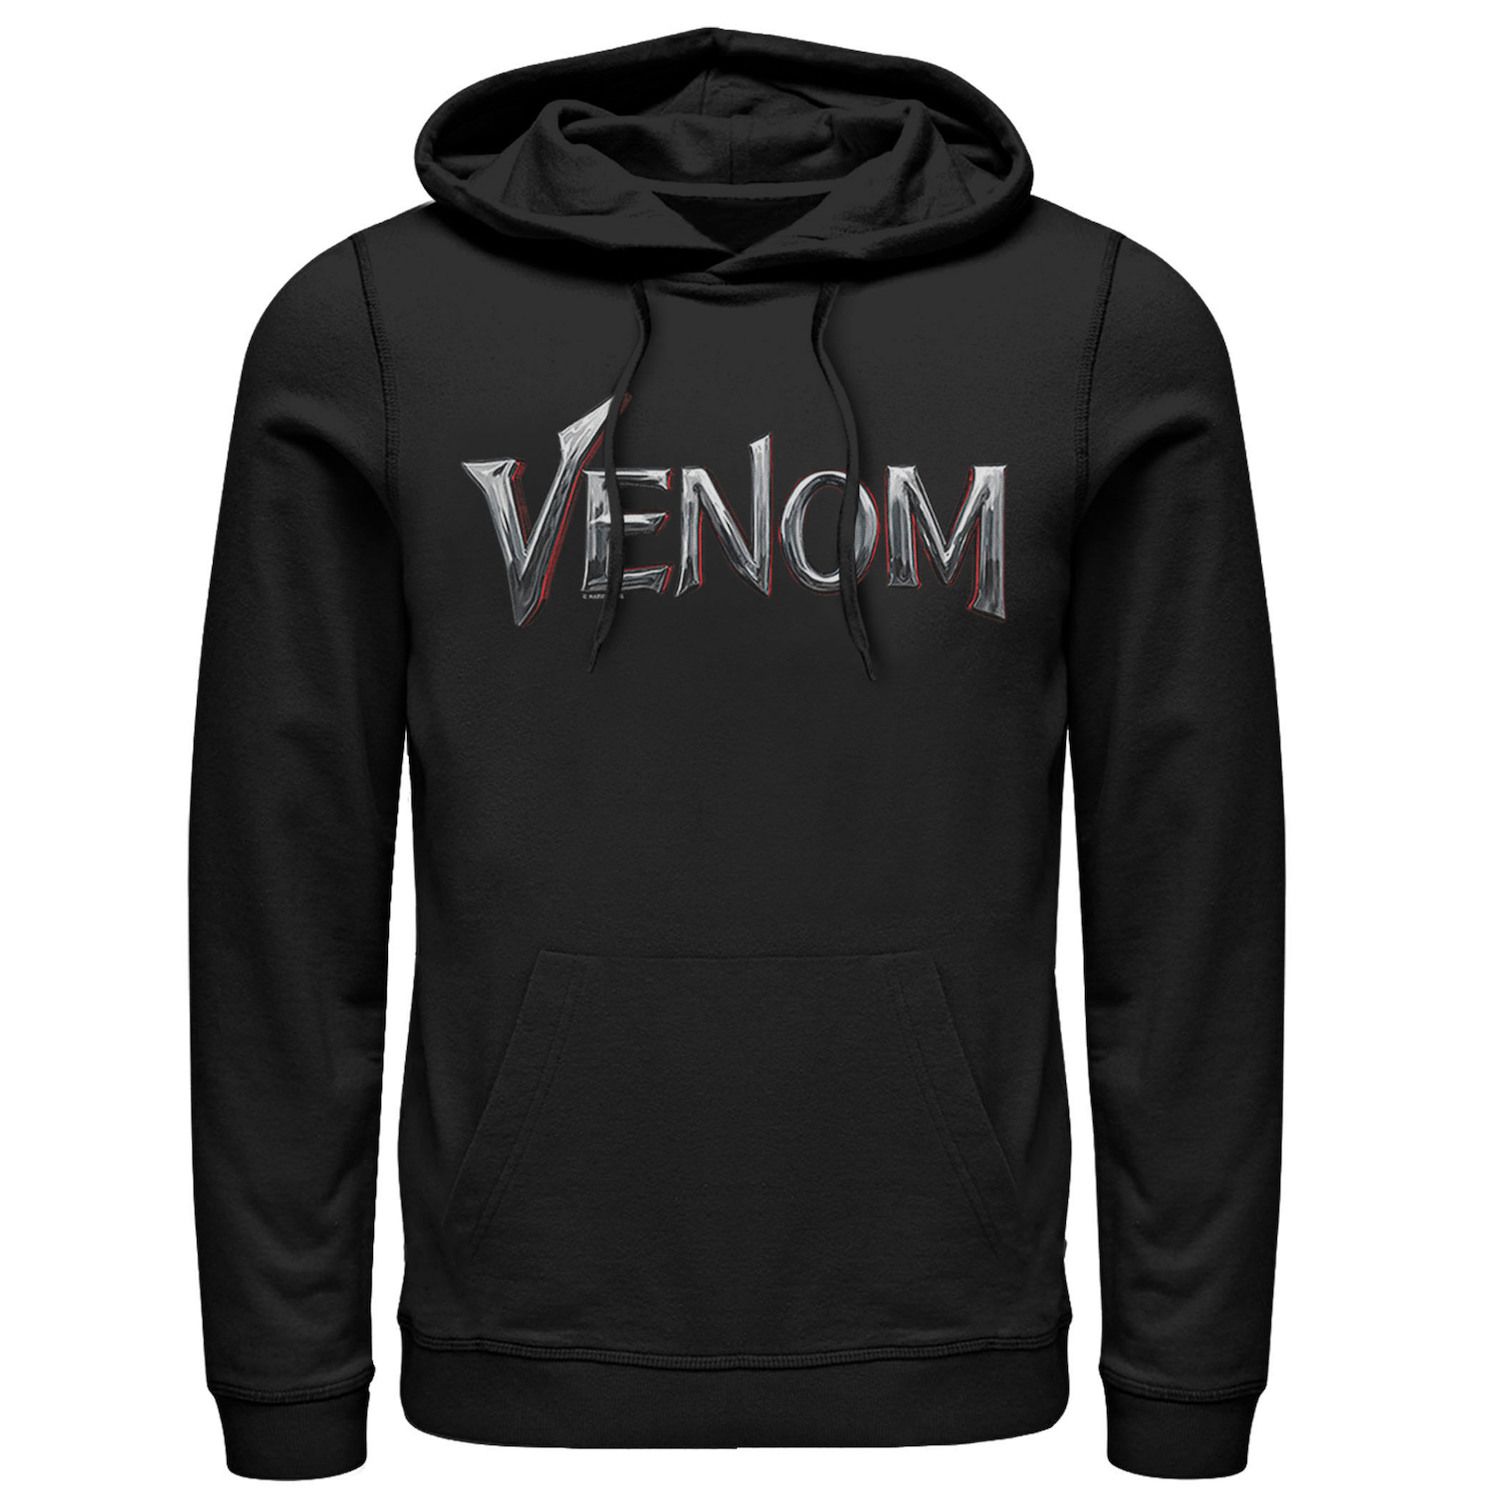 Мужская худи с графическим рисунком и логотипом Marvel Venom Chrome